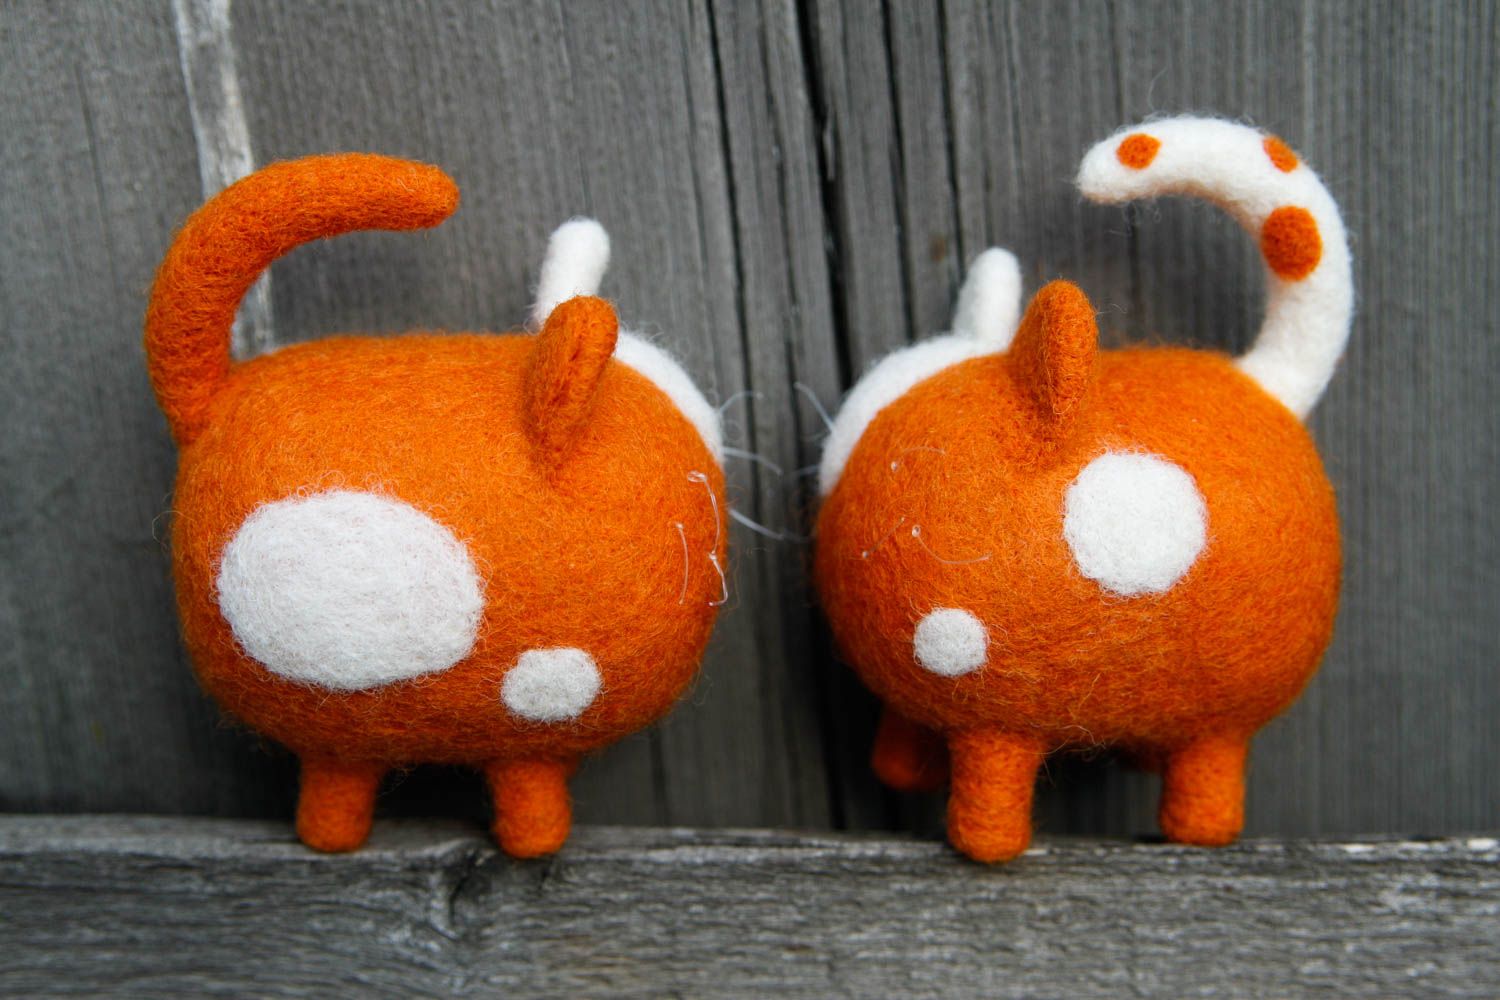 Juguetes artesanales con forma de gatos regalo para niños juguetes decorativos foto 1